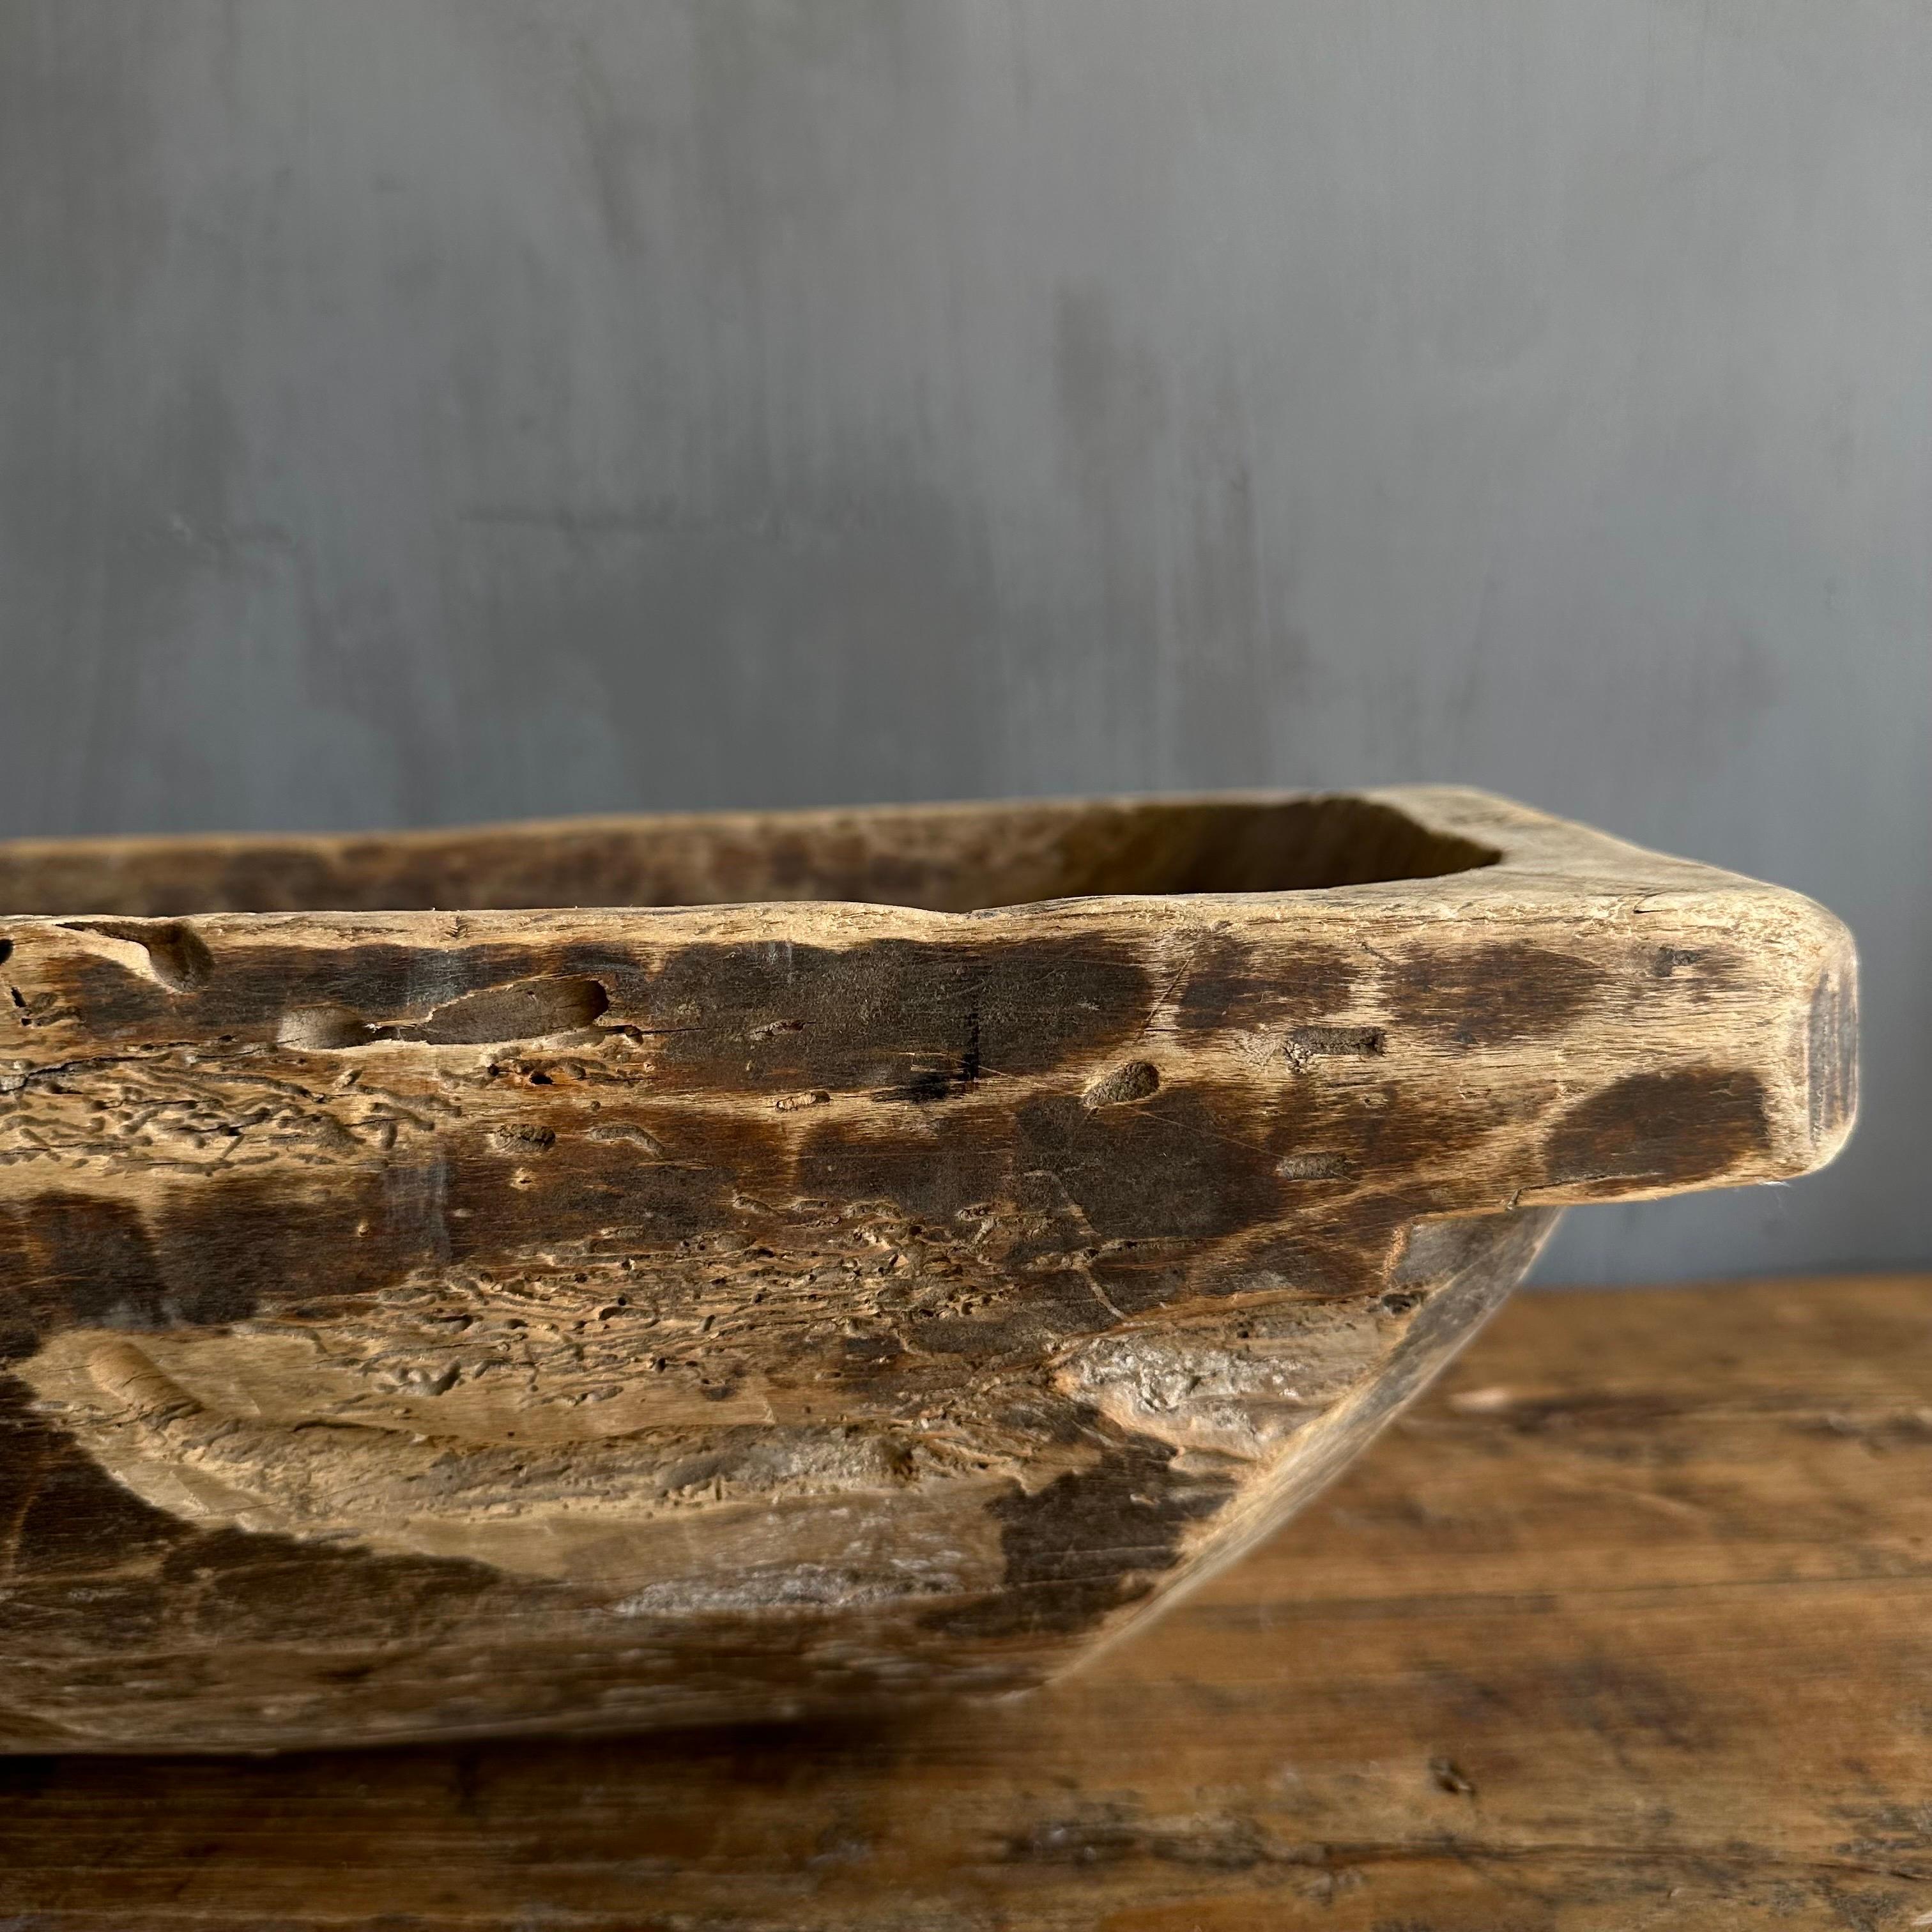 20th Century Vintage Wood Trough Decorative Bowl For Sale